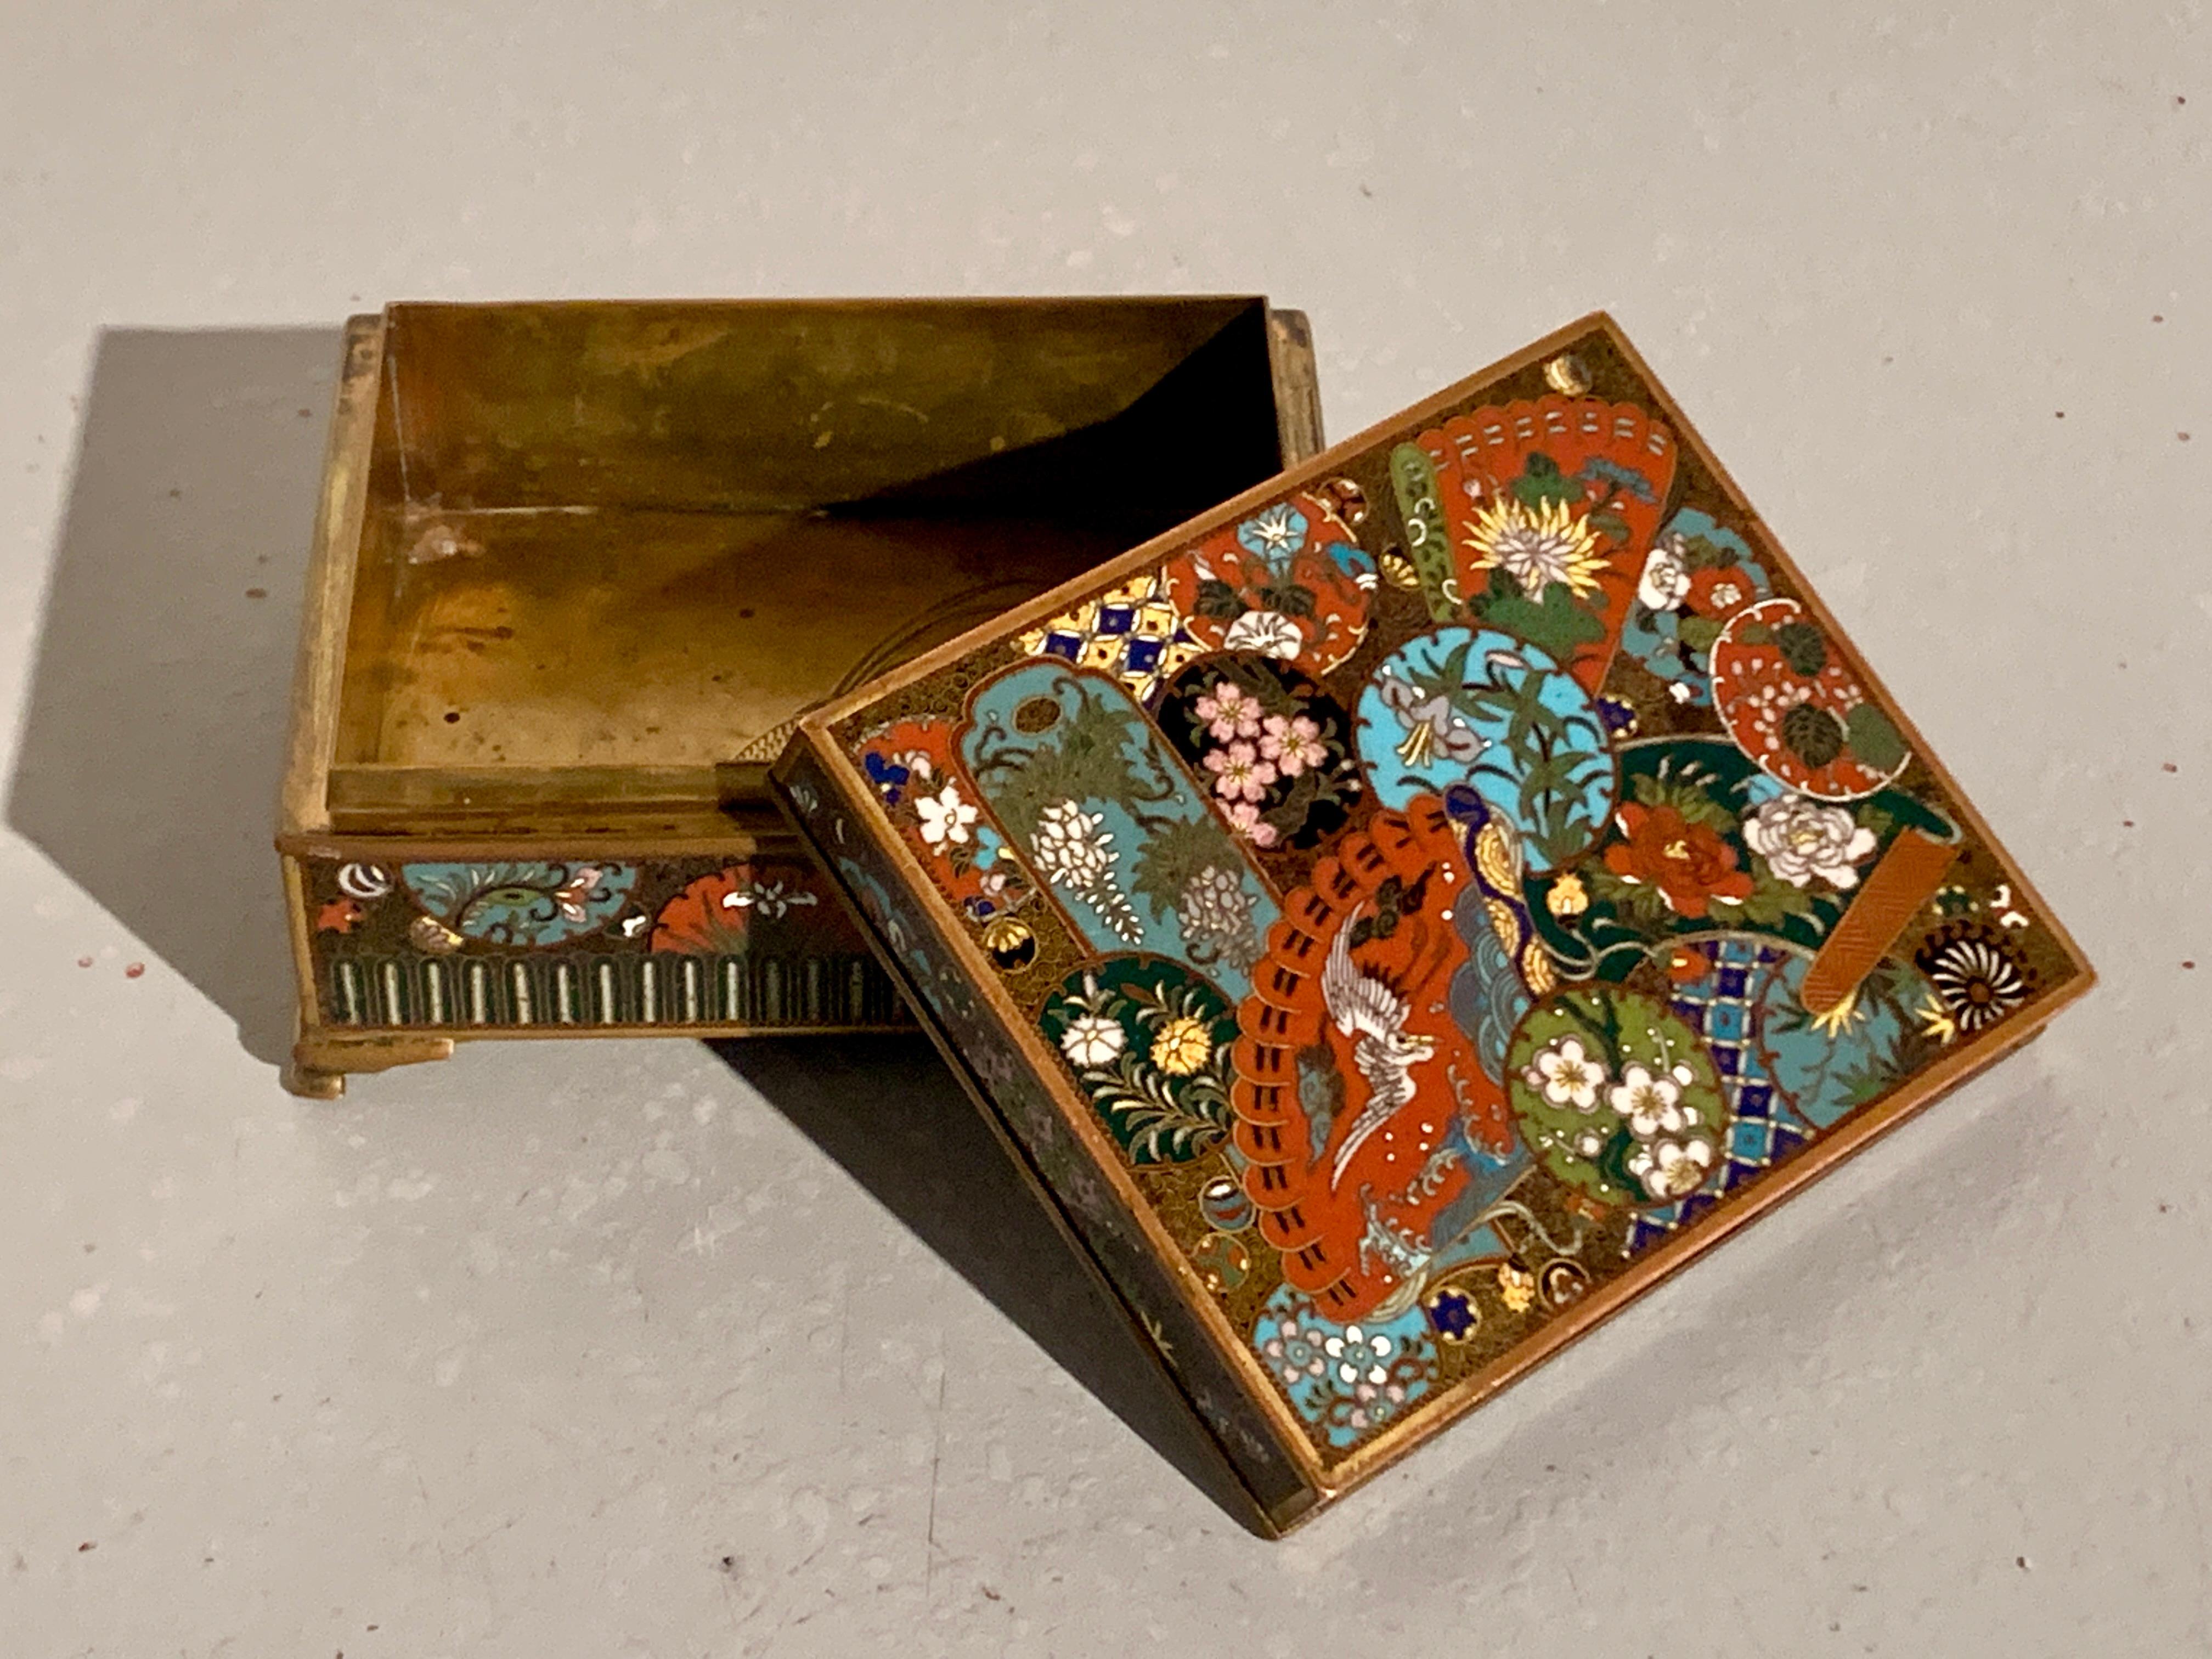 Boîte et couvercle japonais en cloisonné très finement décorés, période Meiji, fin du XIXe siècle, Japon.

La boîte à bibelots ou à bijoux à couvercle est décorée de façon exquise selon la technique de l'émail cloisonné sur une base en cuivre,